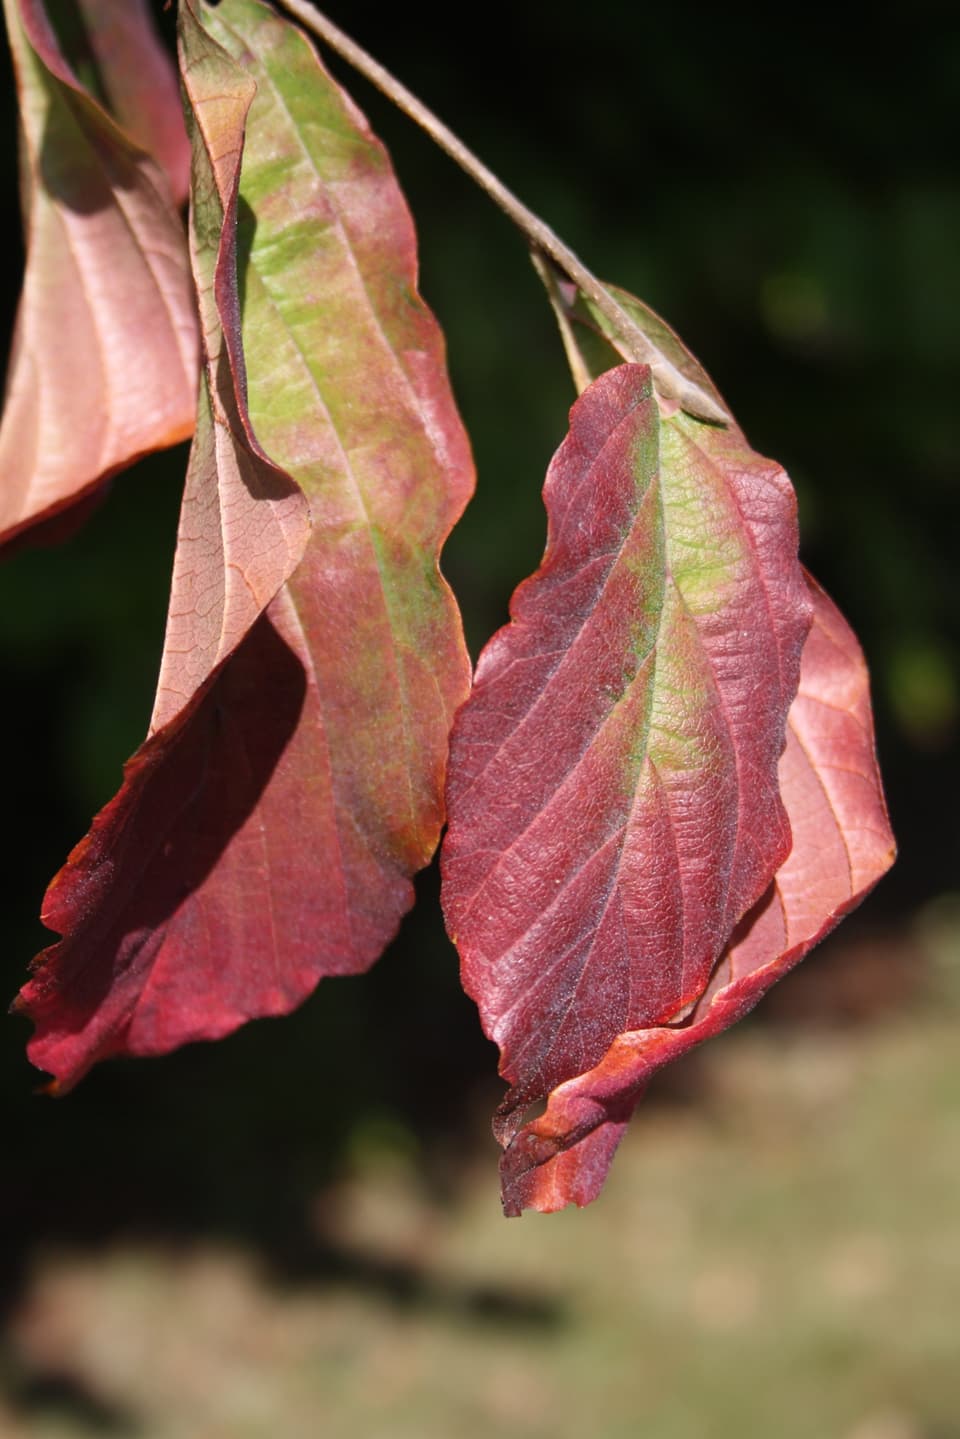 Auf Grund der grossen Trockenheit haben sich die Blätter teilweise schon für verfärbt.